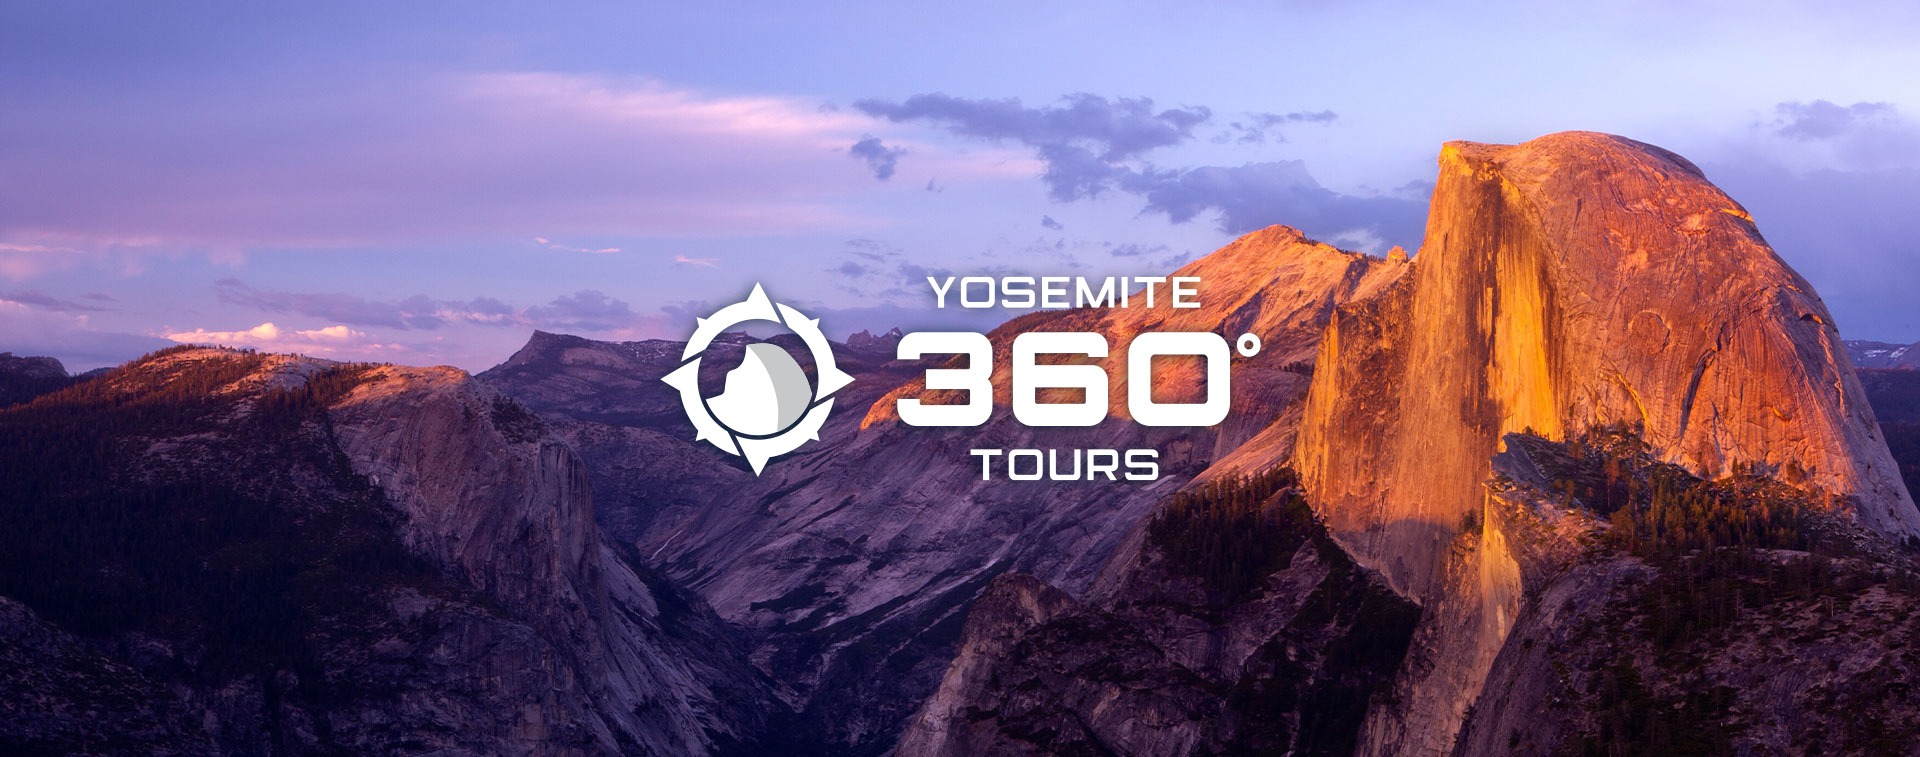 Yosemite 360 tours